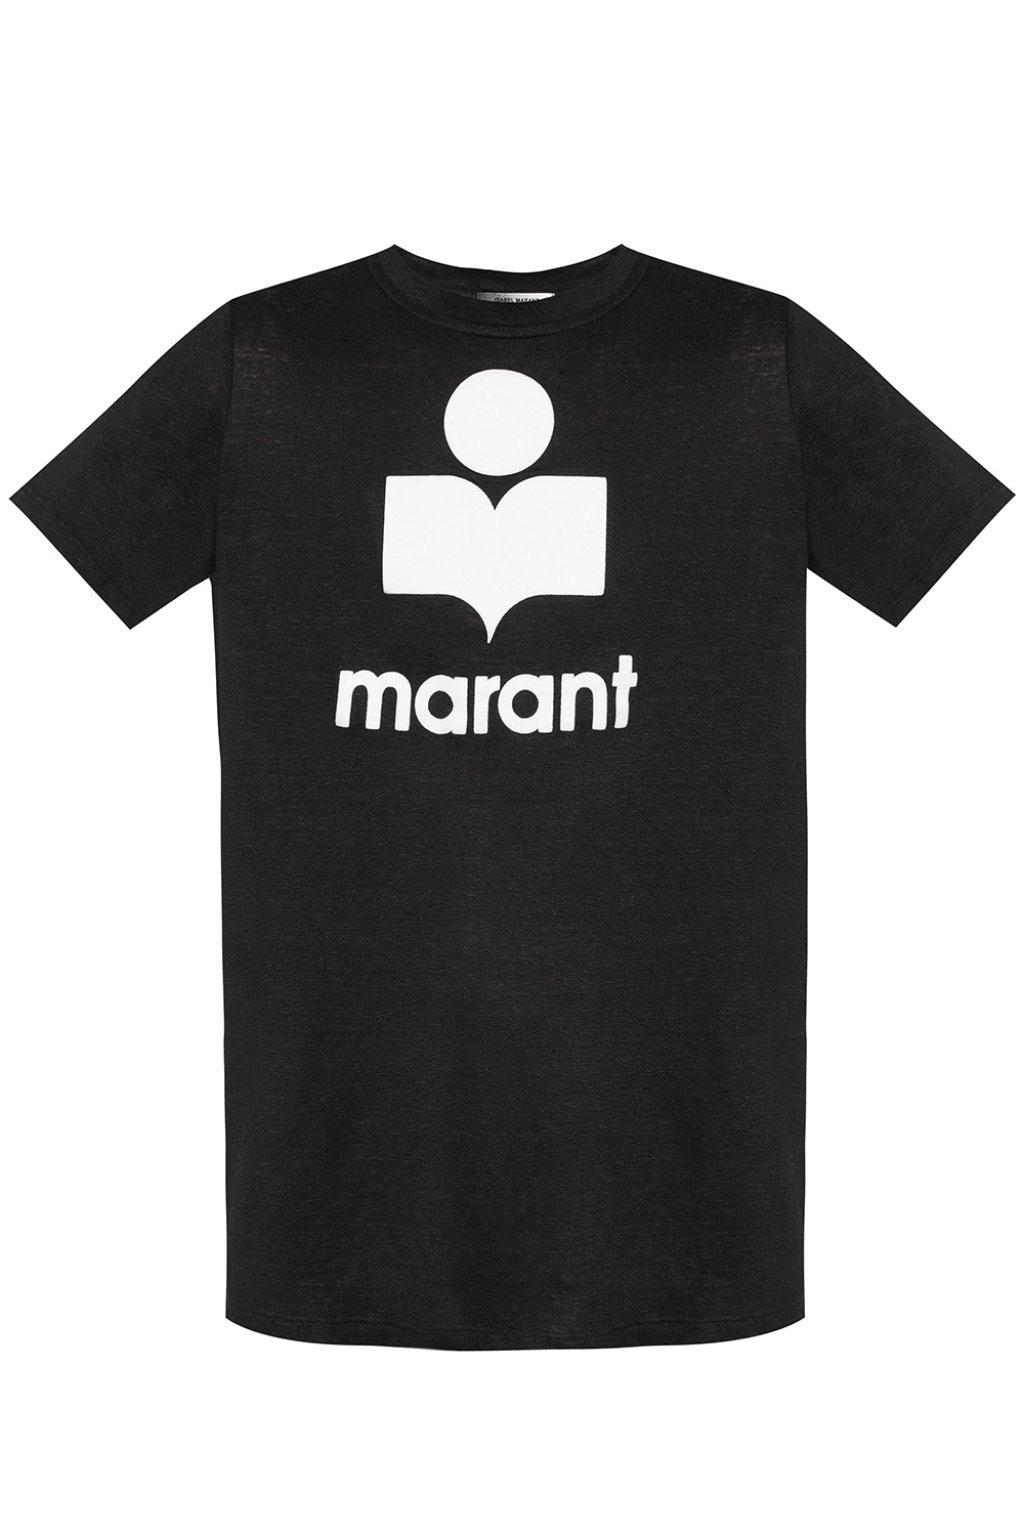 shirt Isabel Marant - Logo - embossed T - GenesinlifeShops Liberia ...